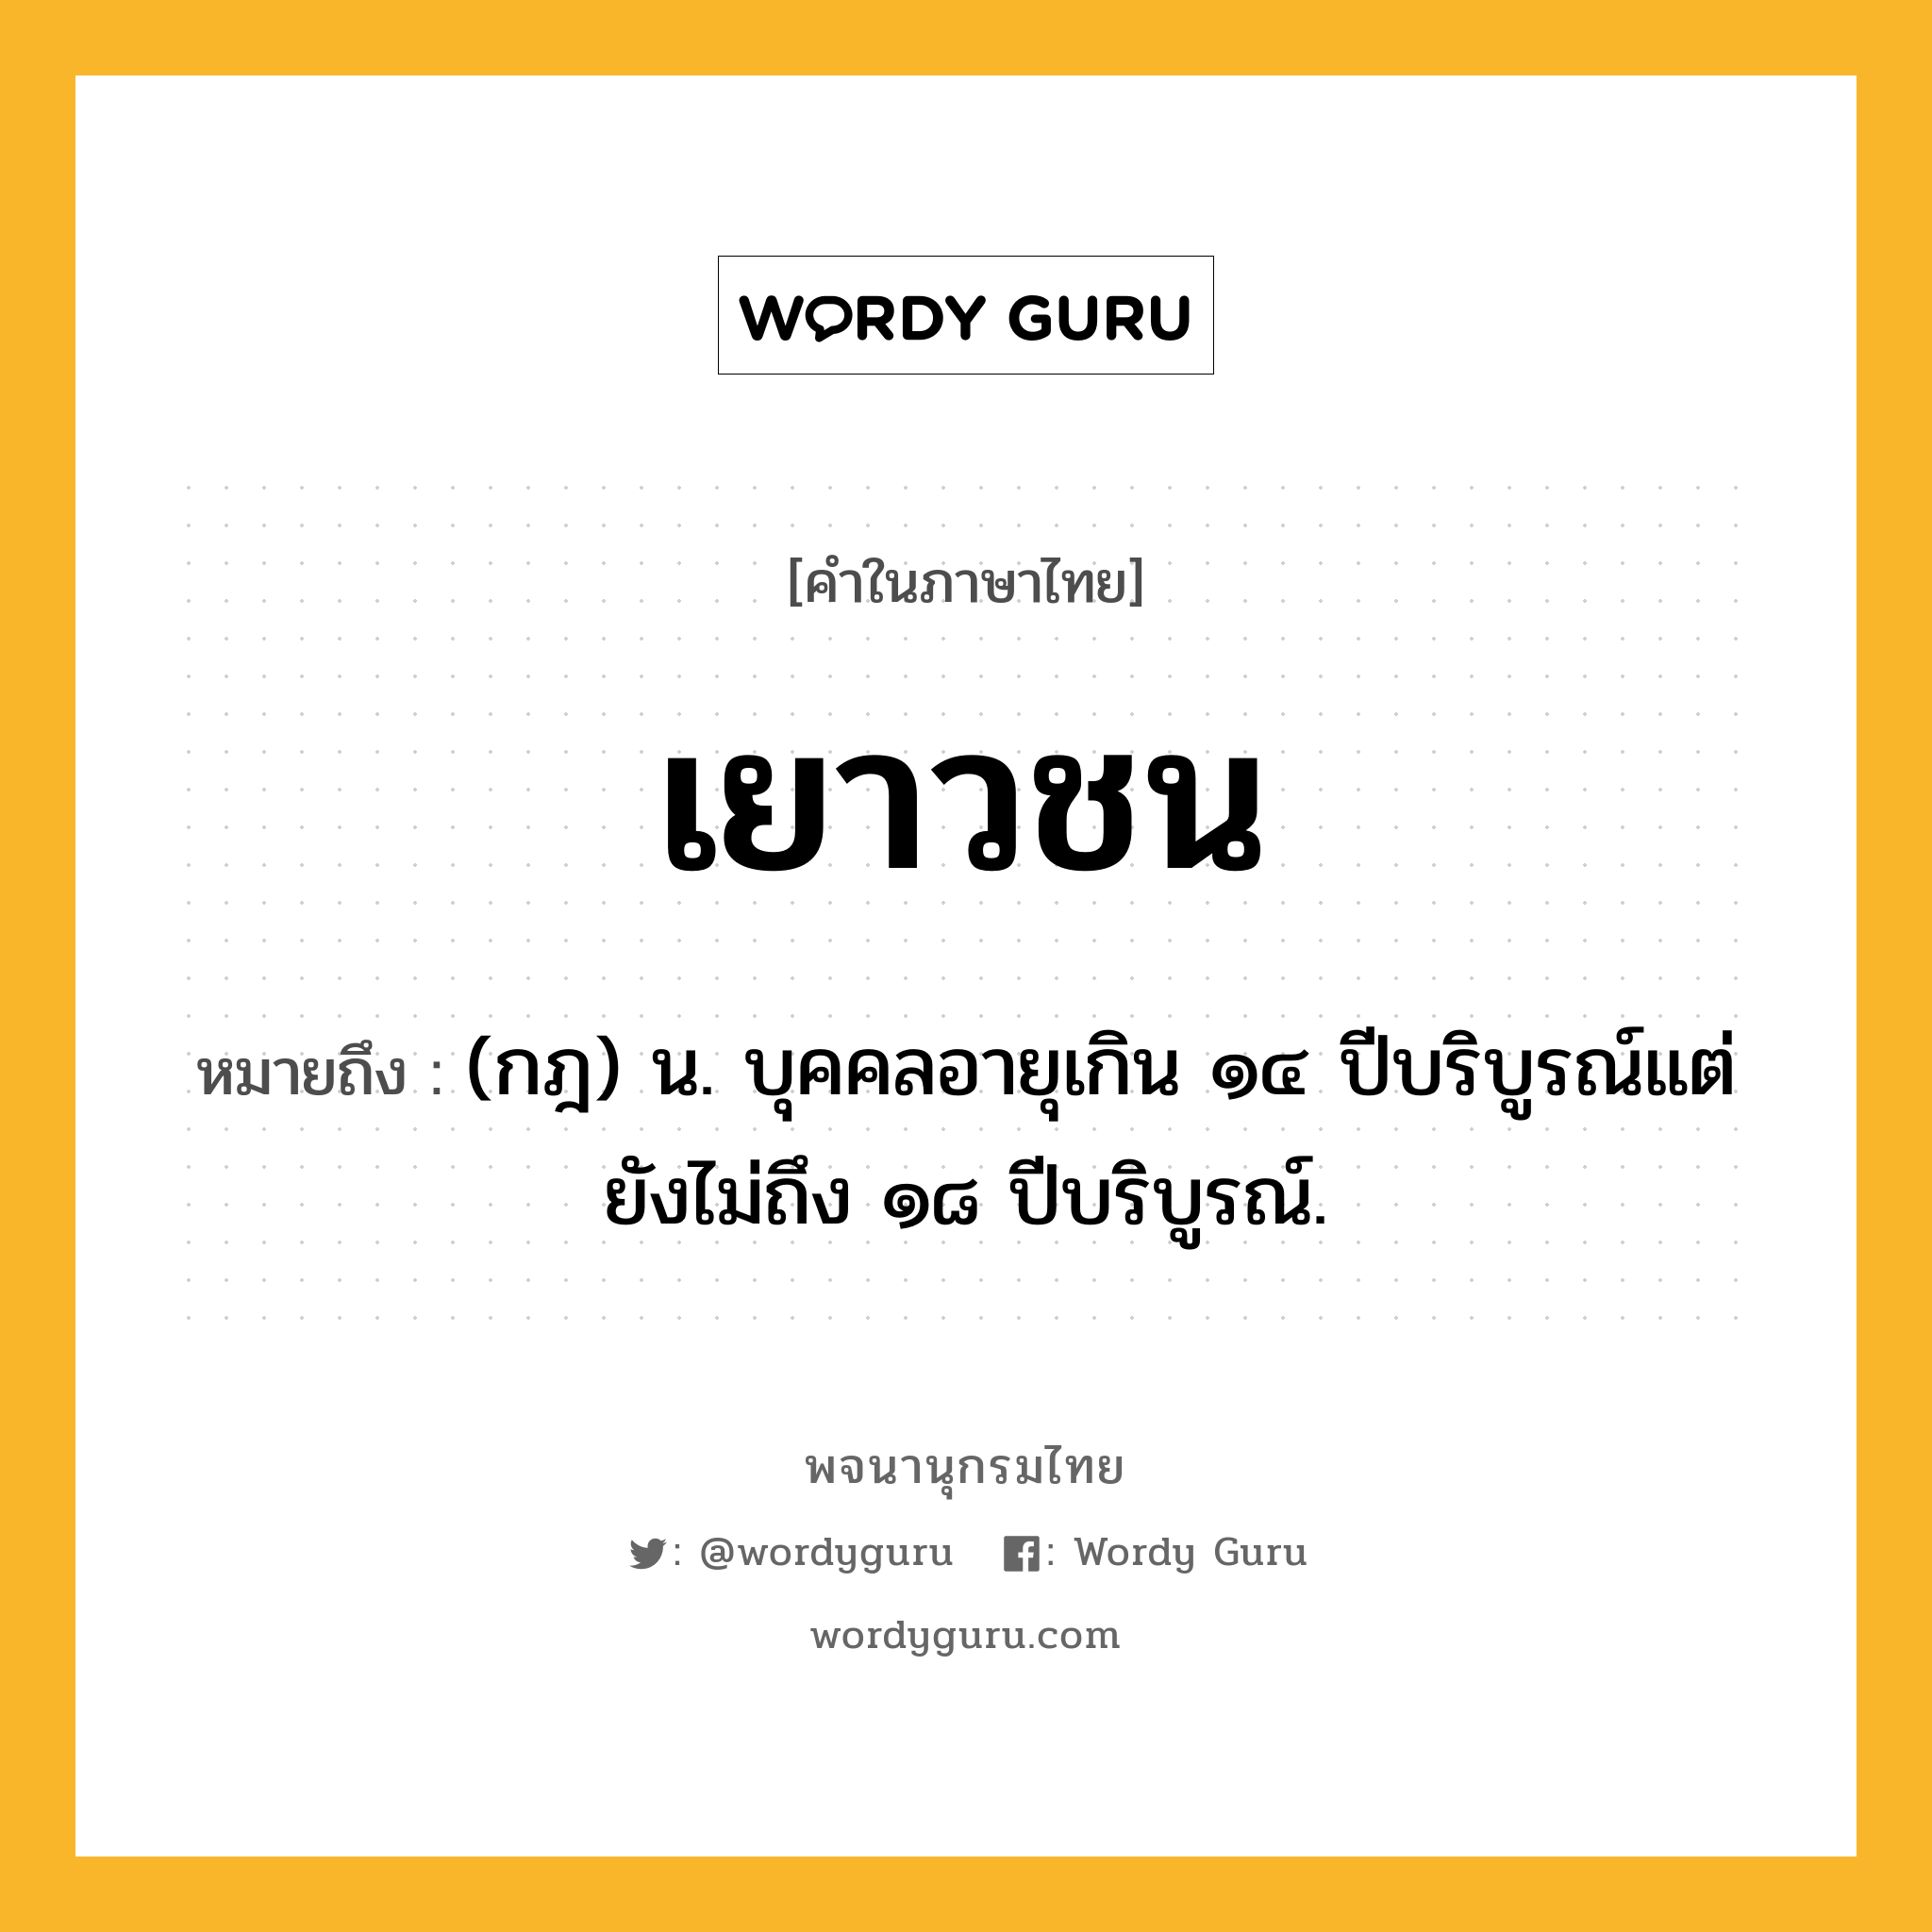 เยาวชน ความหมาย หมายถึงอะไร?, คำในภาษาไทย เยาวชน หมายถึง (กฎ) น. บุคคลอายุเกิน ๑๔ ปีบริบูรณ์แต่ยังไม่ถึง ๑๘ ปีบริบูรณ์.